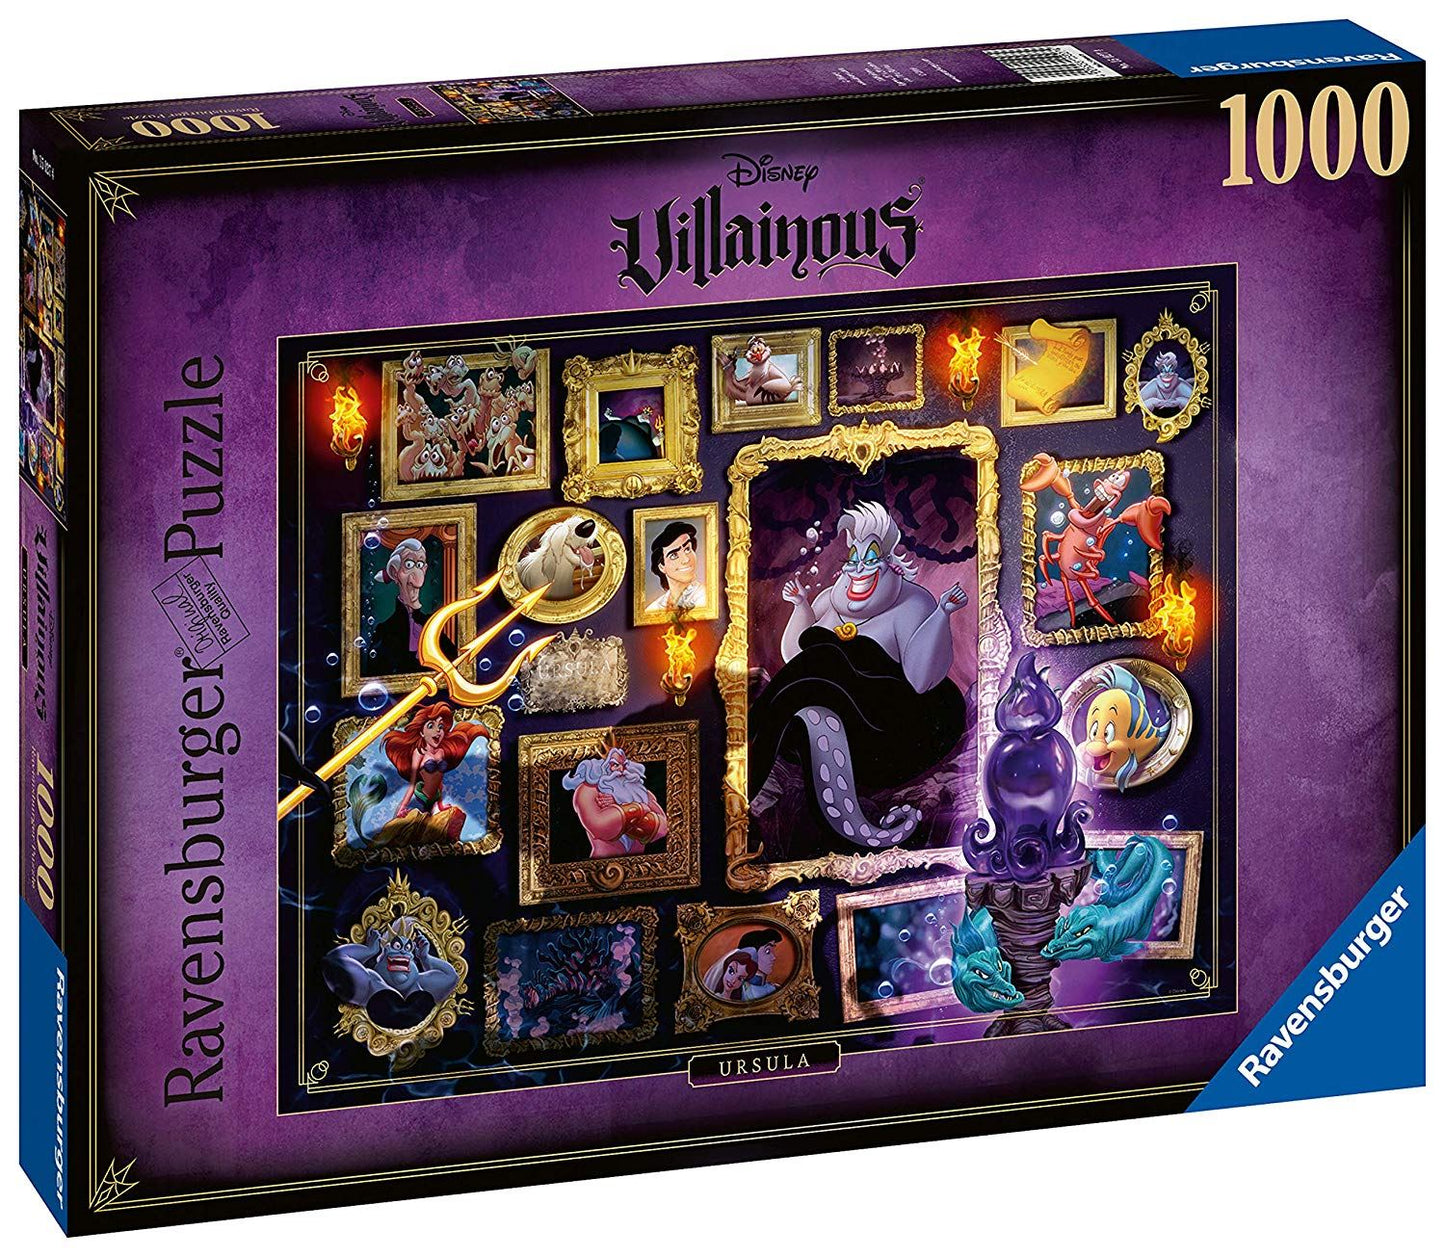 Villainous Ursula, 1000 Piece Jigsaw Puzzle